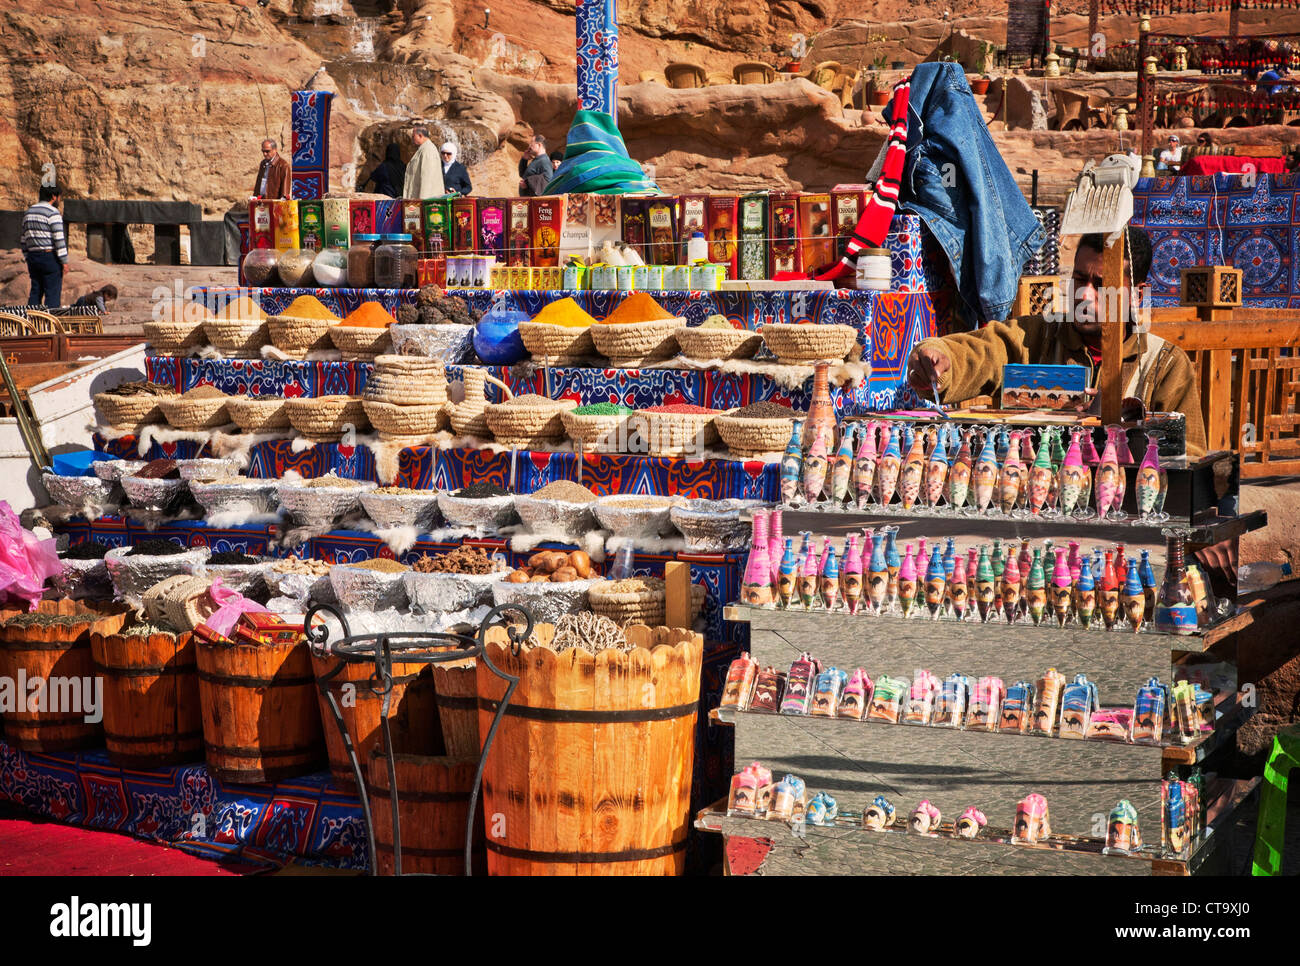 Egypt. Sharm El Sheikh market stall. Stock Photo